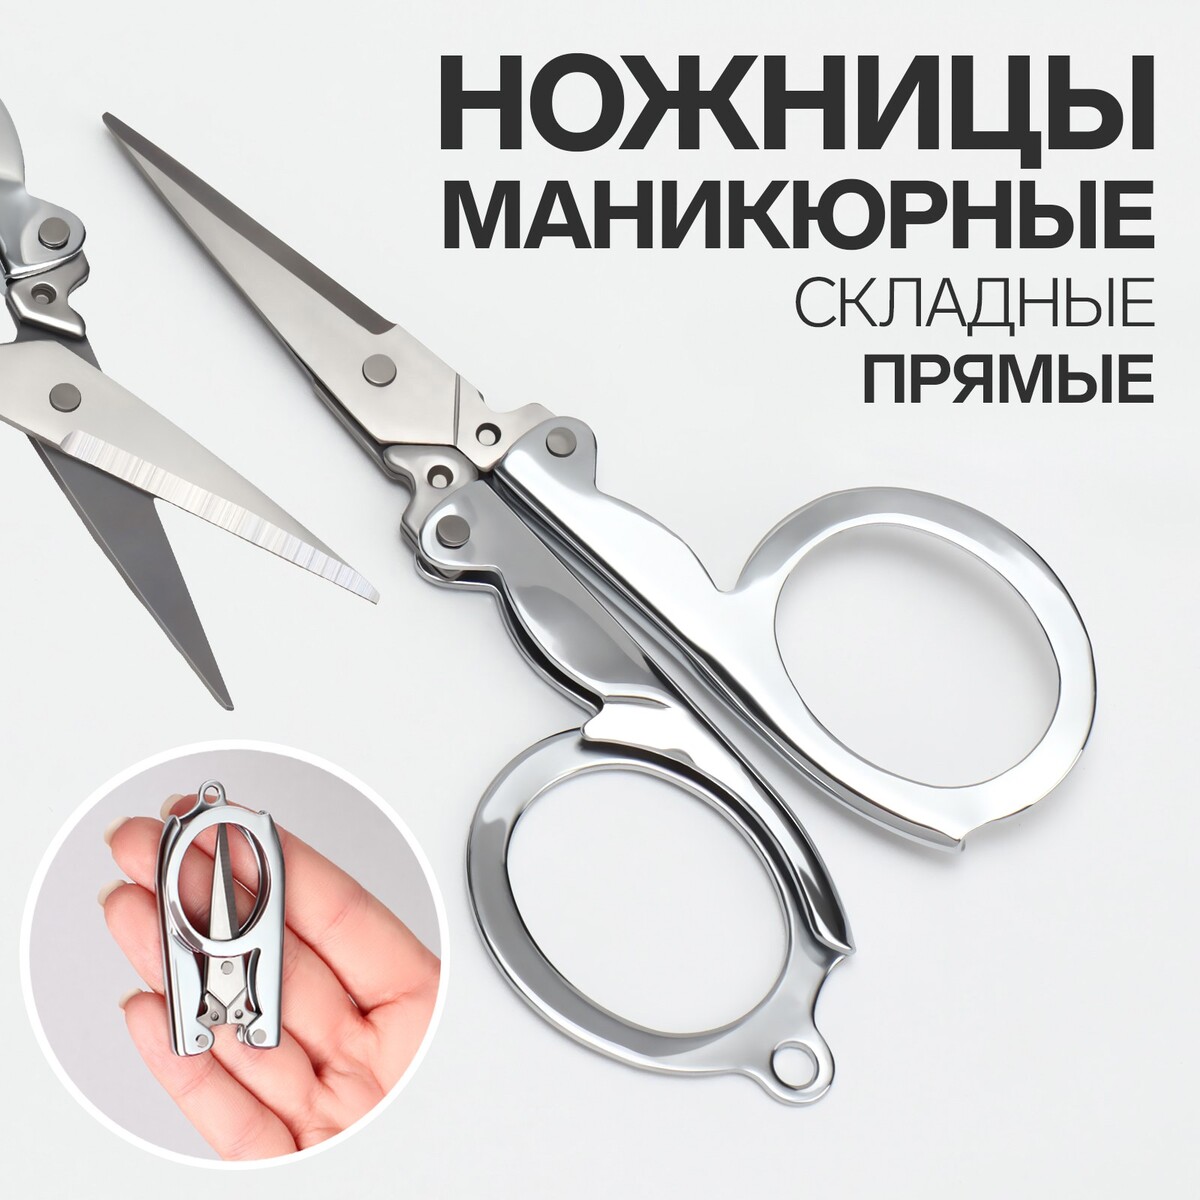 Ножницы маникюрные, складные, прямые, 10,5 см, цвет серебристый ножницы маникюрные прямые узкие 10 5 см серебристый